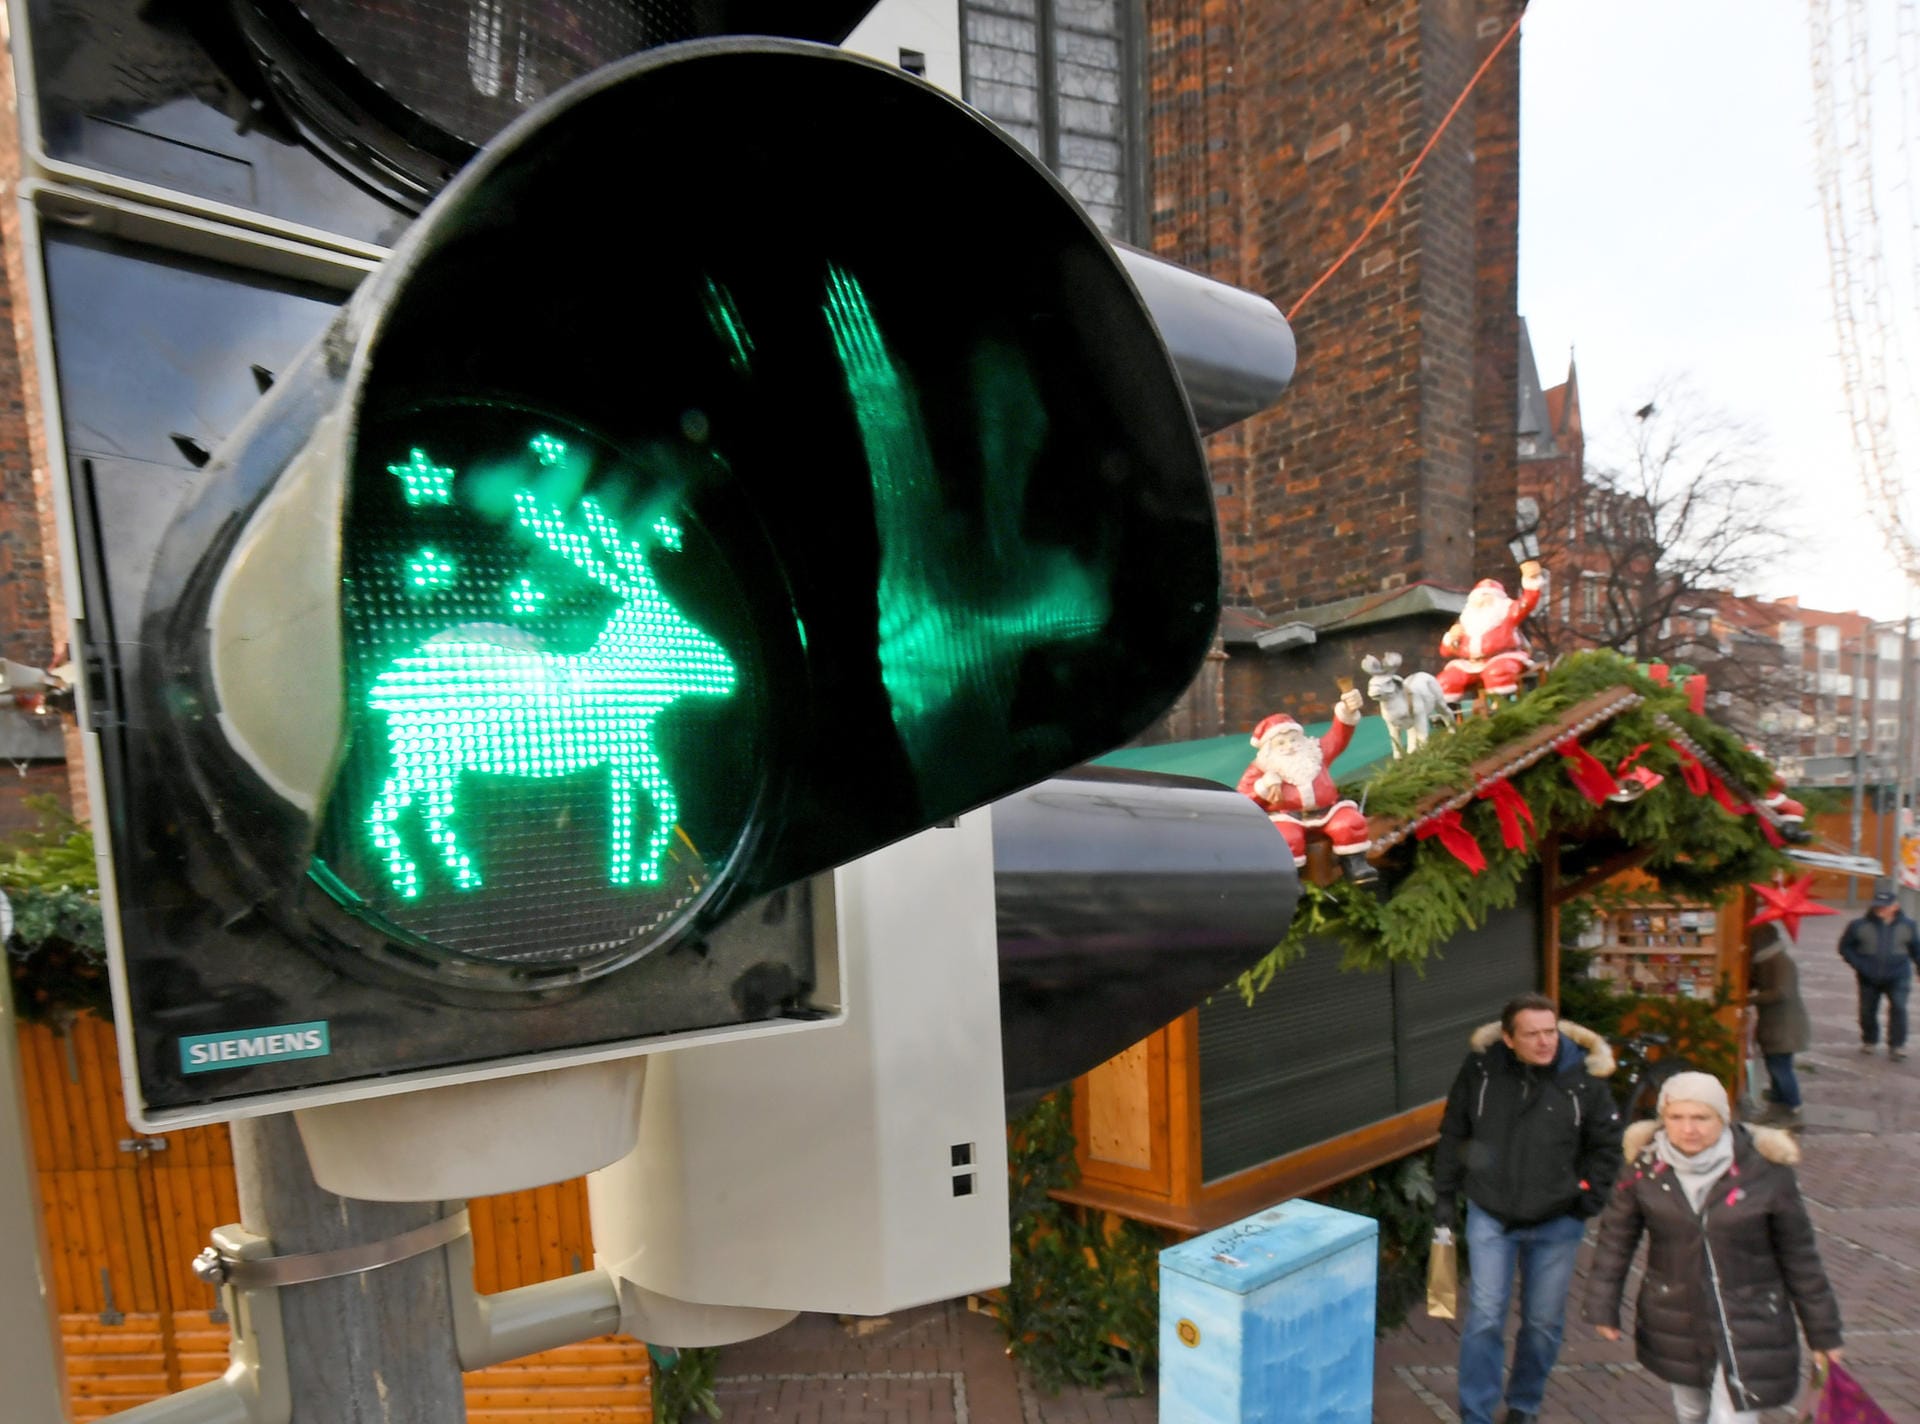 Den Weihnachtsmarkt in Hannover ziert 2018 eine Ampel, die bei Grün ein Rentier zeigt. Eine weitere Ampel in der niedersächsischen Landeshauptstadt zeigt einen Engel.